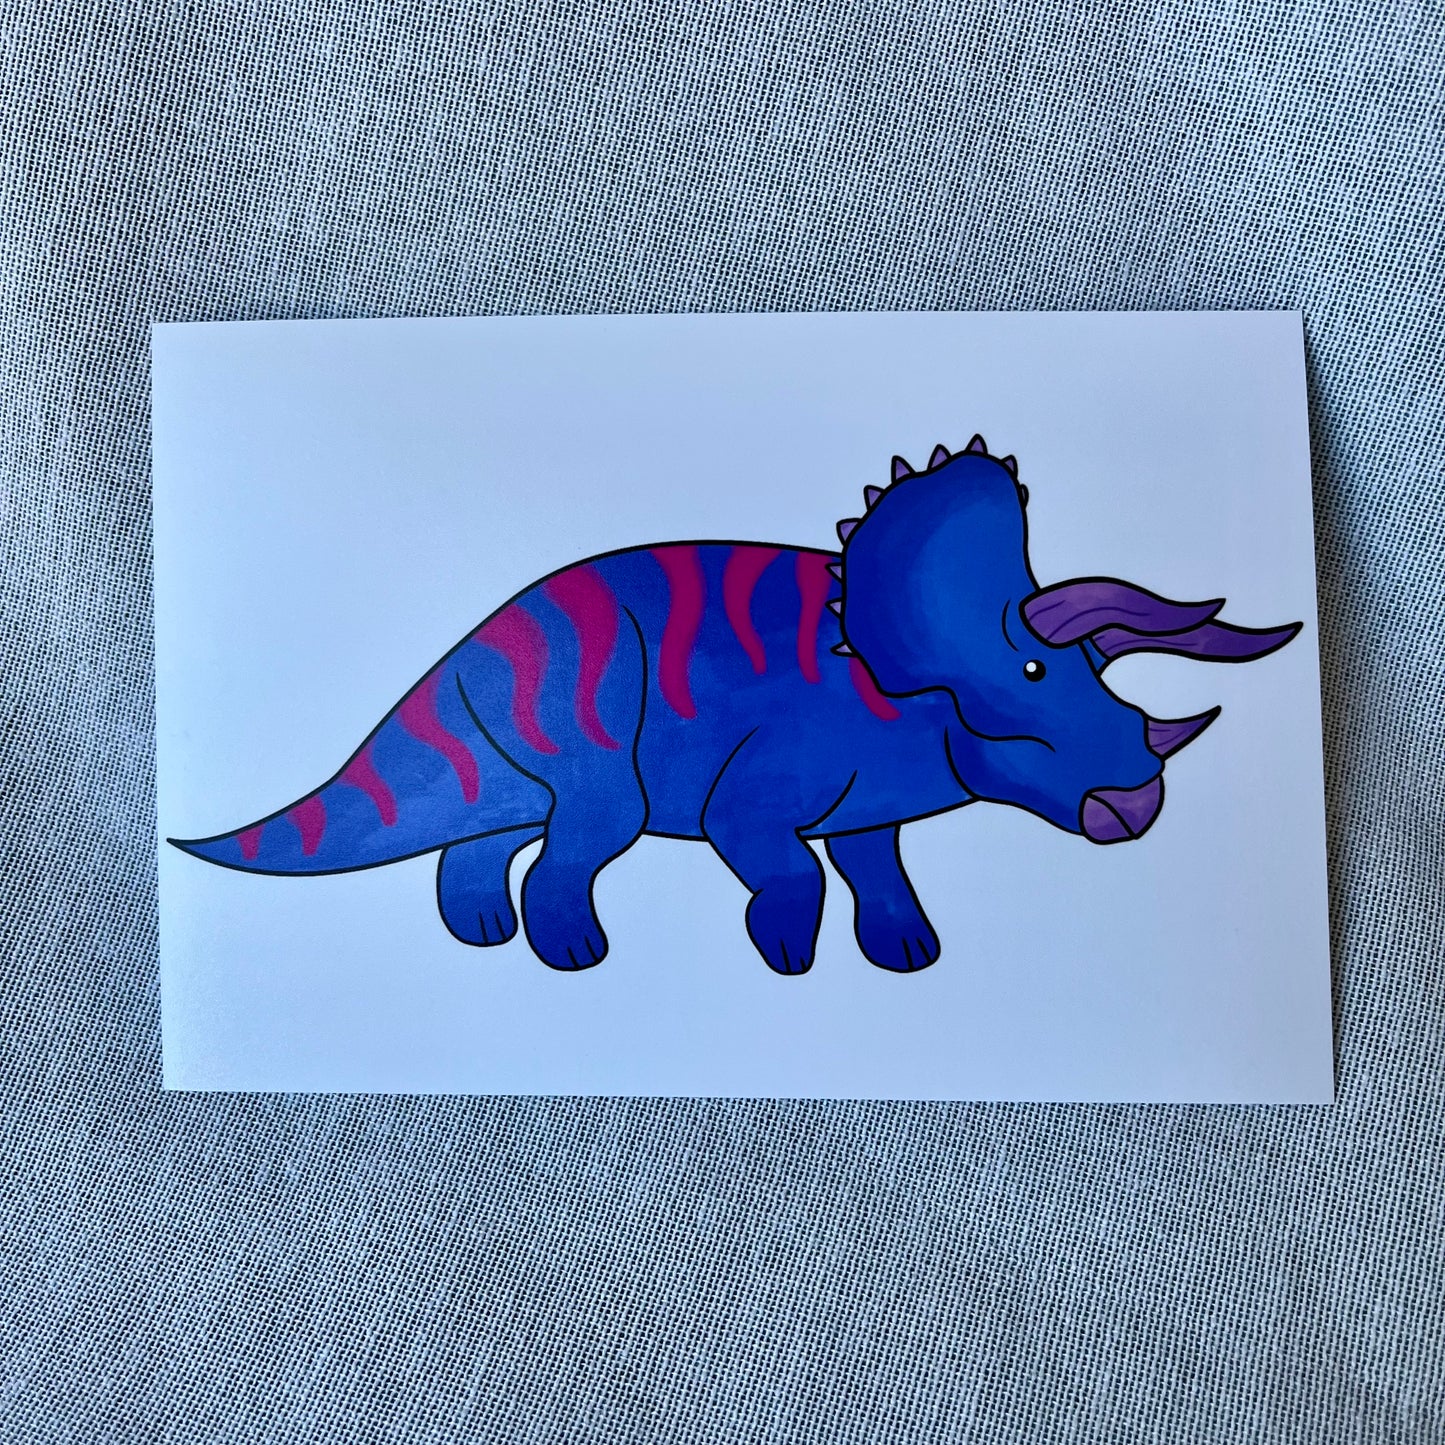 Pride Dinosaur Print: Bi-ceratops